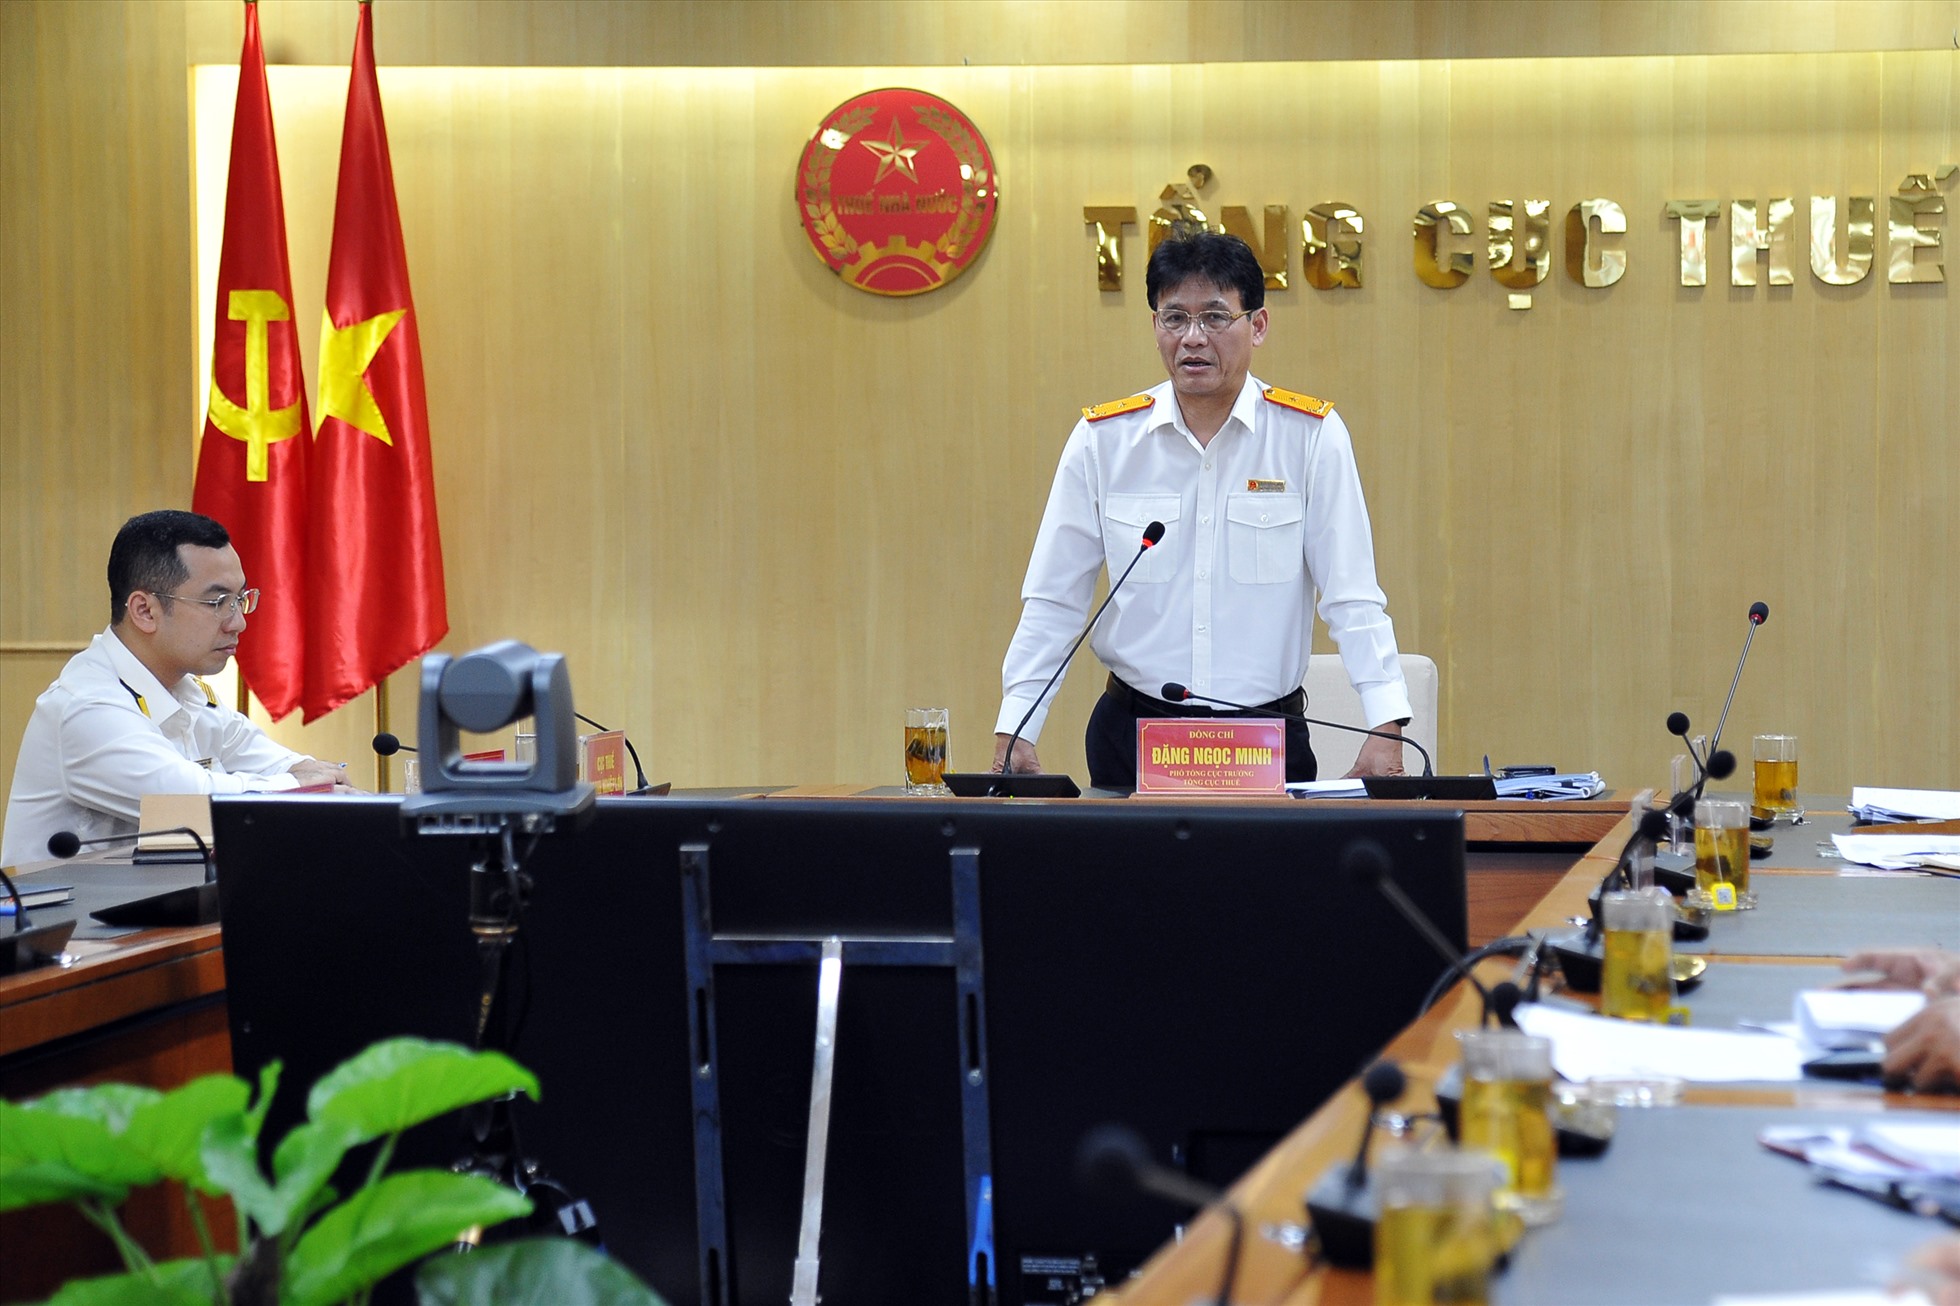 Phó Tổng cục trưởng Đặng Ngọc Minh trao đổi về Thuế tối thiểu toàn cầu. Ảnh: Tổng cục Thuế.